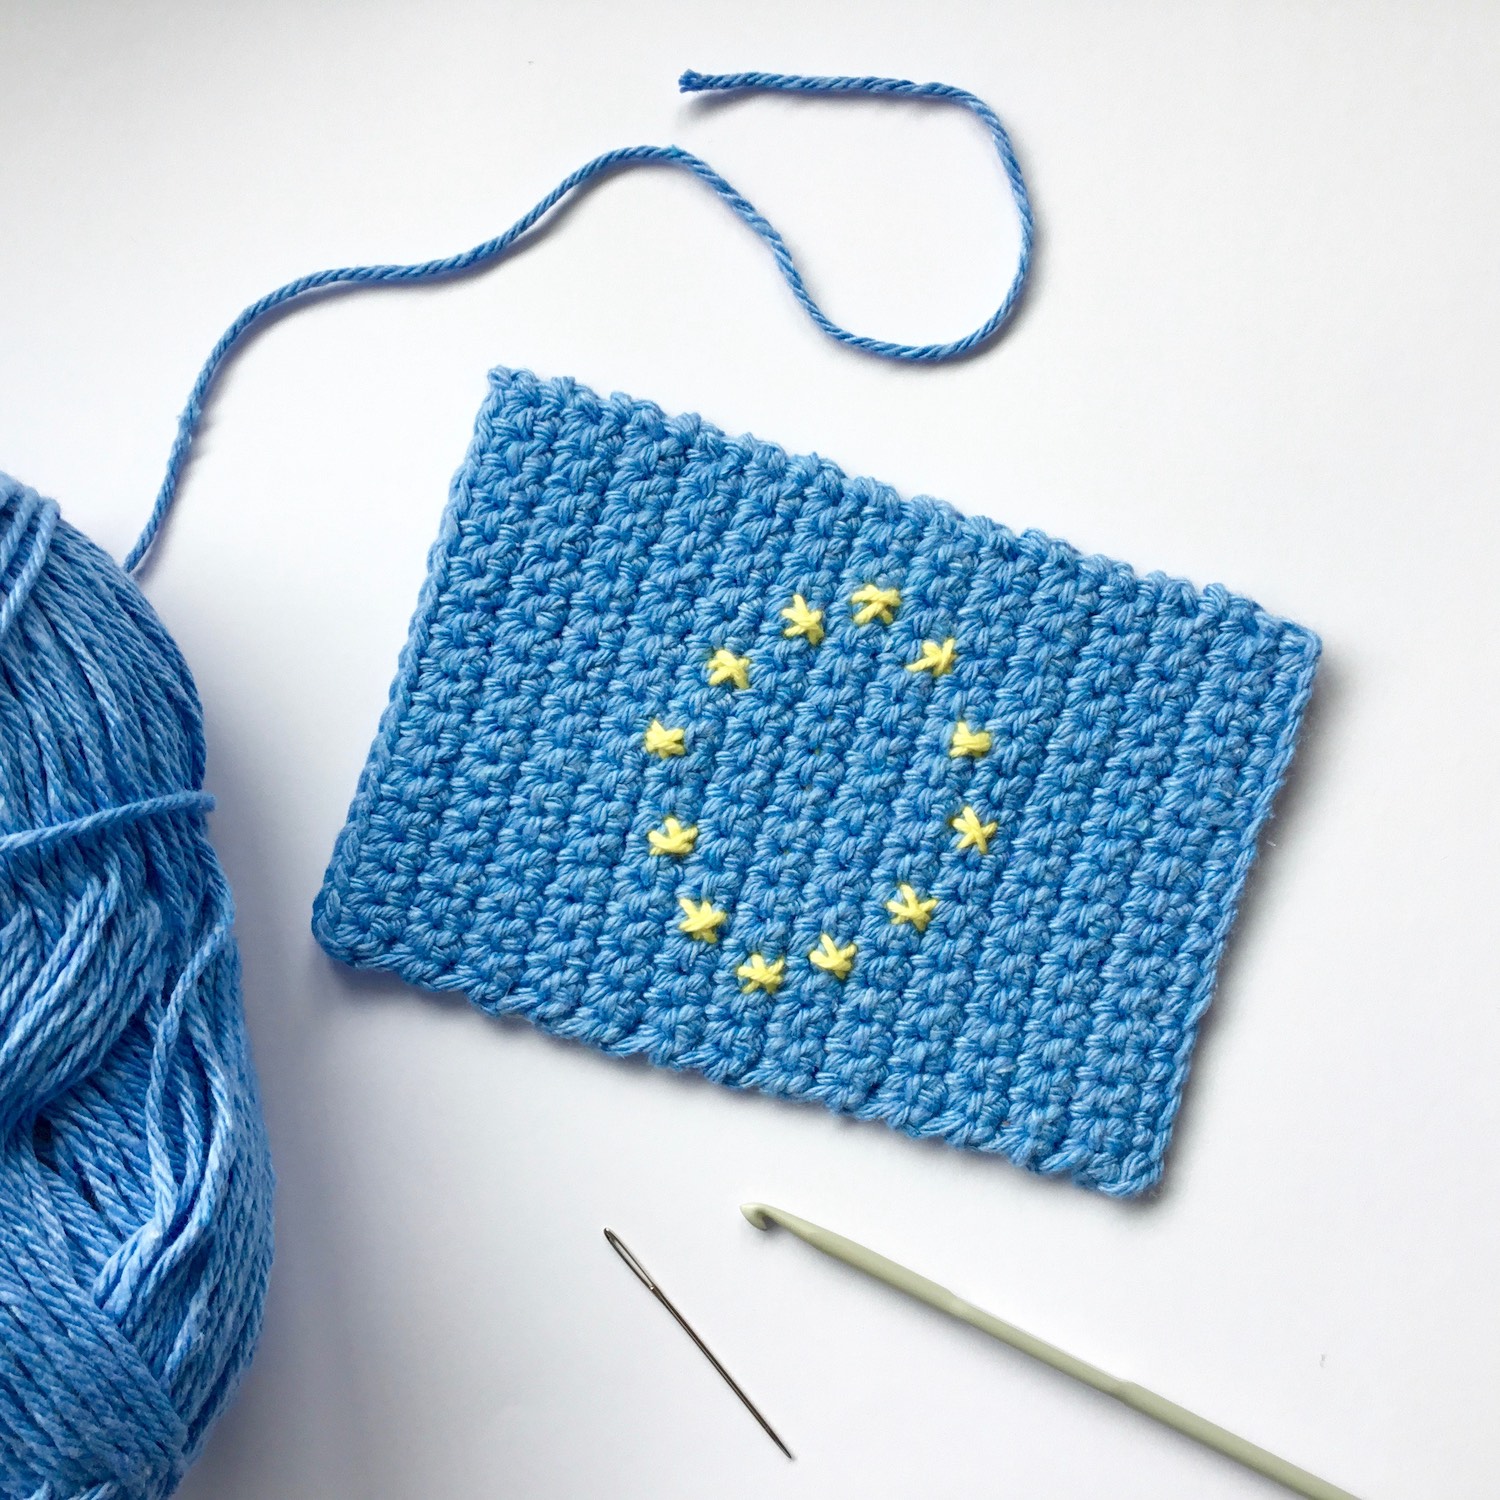 How to crochet an EU Flag